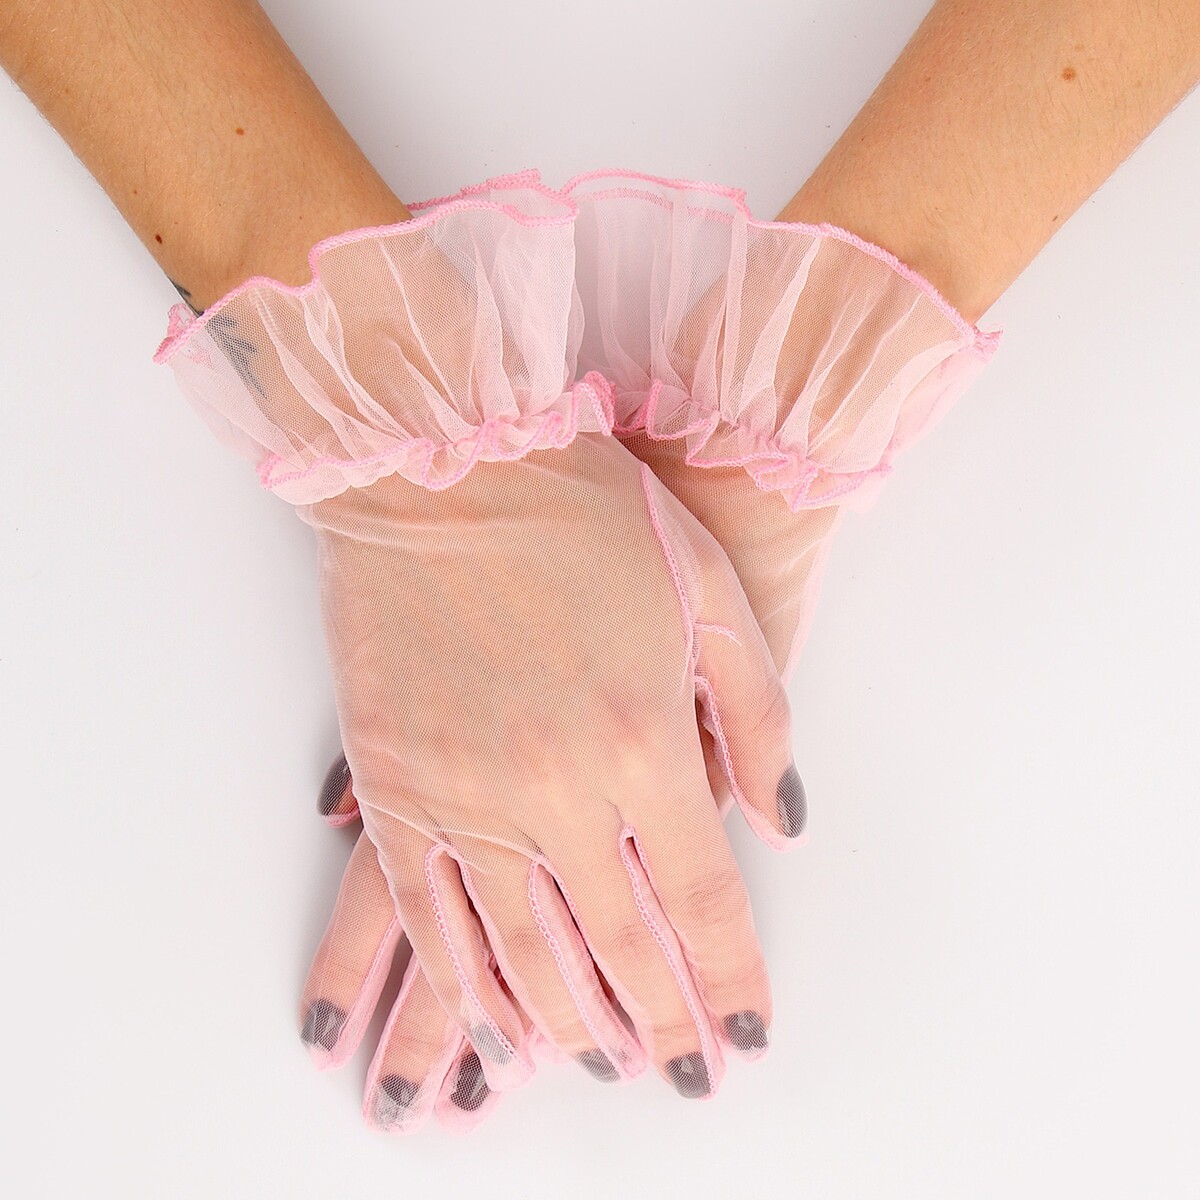 Карнавальный аксессуар - перчатки прозрачные с юбочкой, цвет розовый карнавальный аксессуар перчатки прозрачные с юбочкой розовый